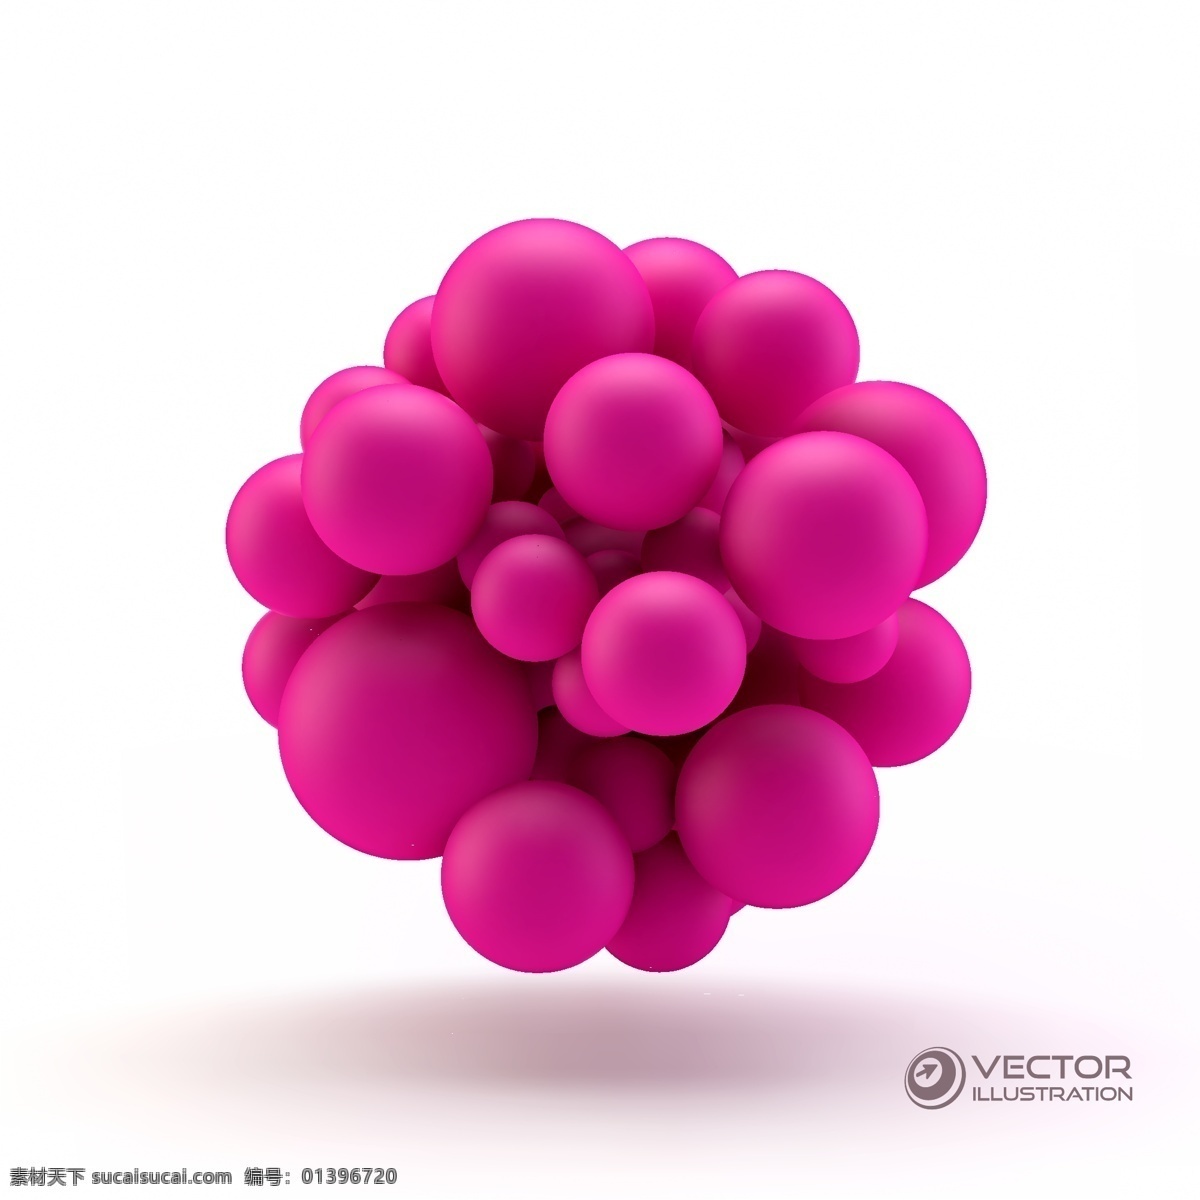 紫红色 球形 图案 立体背景 立体图案 背景图案 3d背景 生活百科 矢量素材 白色